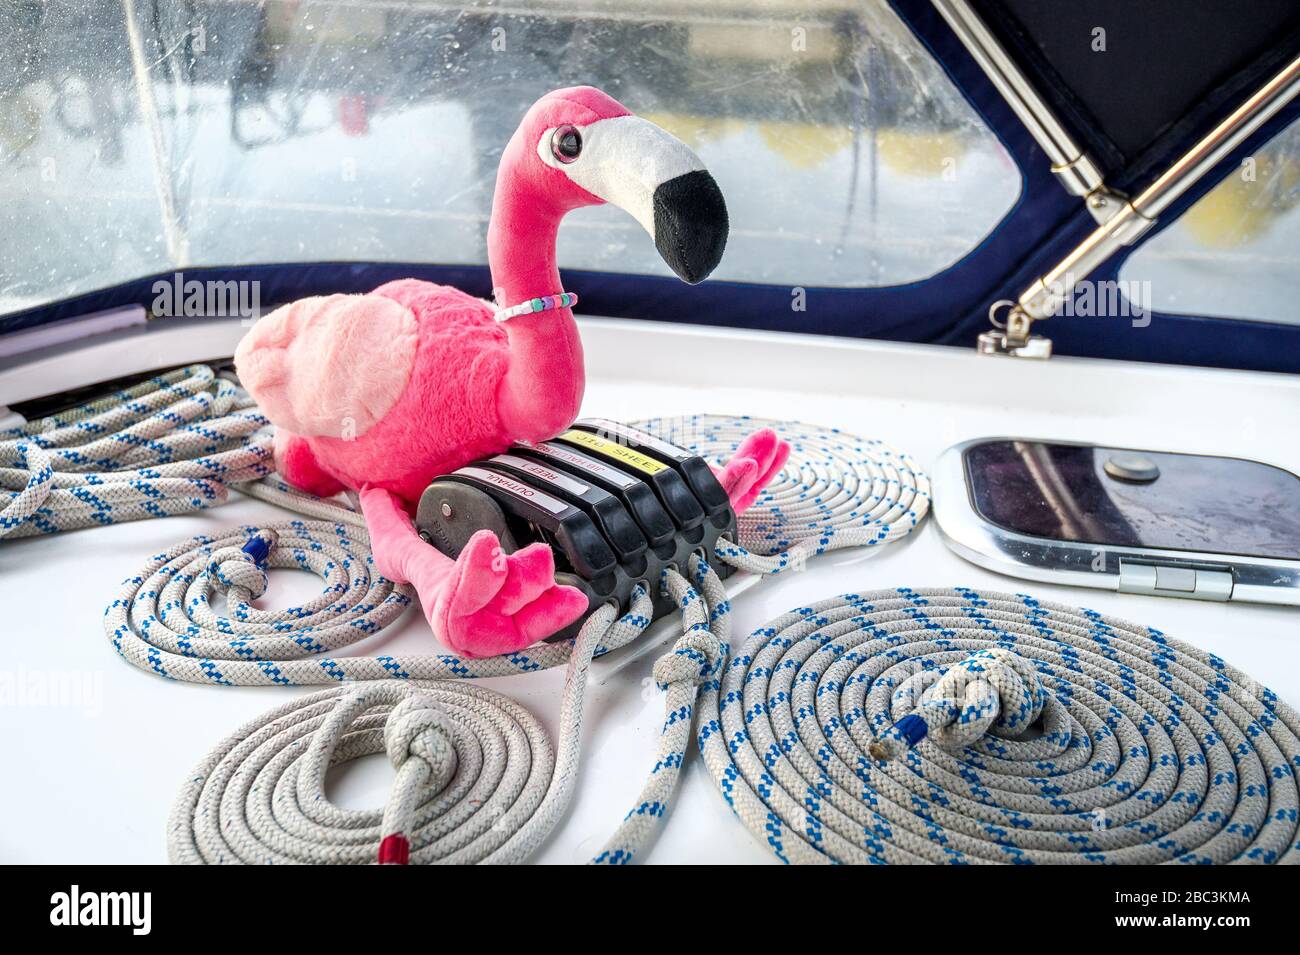 Le jouet en flamants roses et les cordes de yacht de voile s'entailent parfaitement près de ses pinces. Largs, Écosse. Banque D'Images